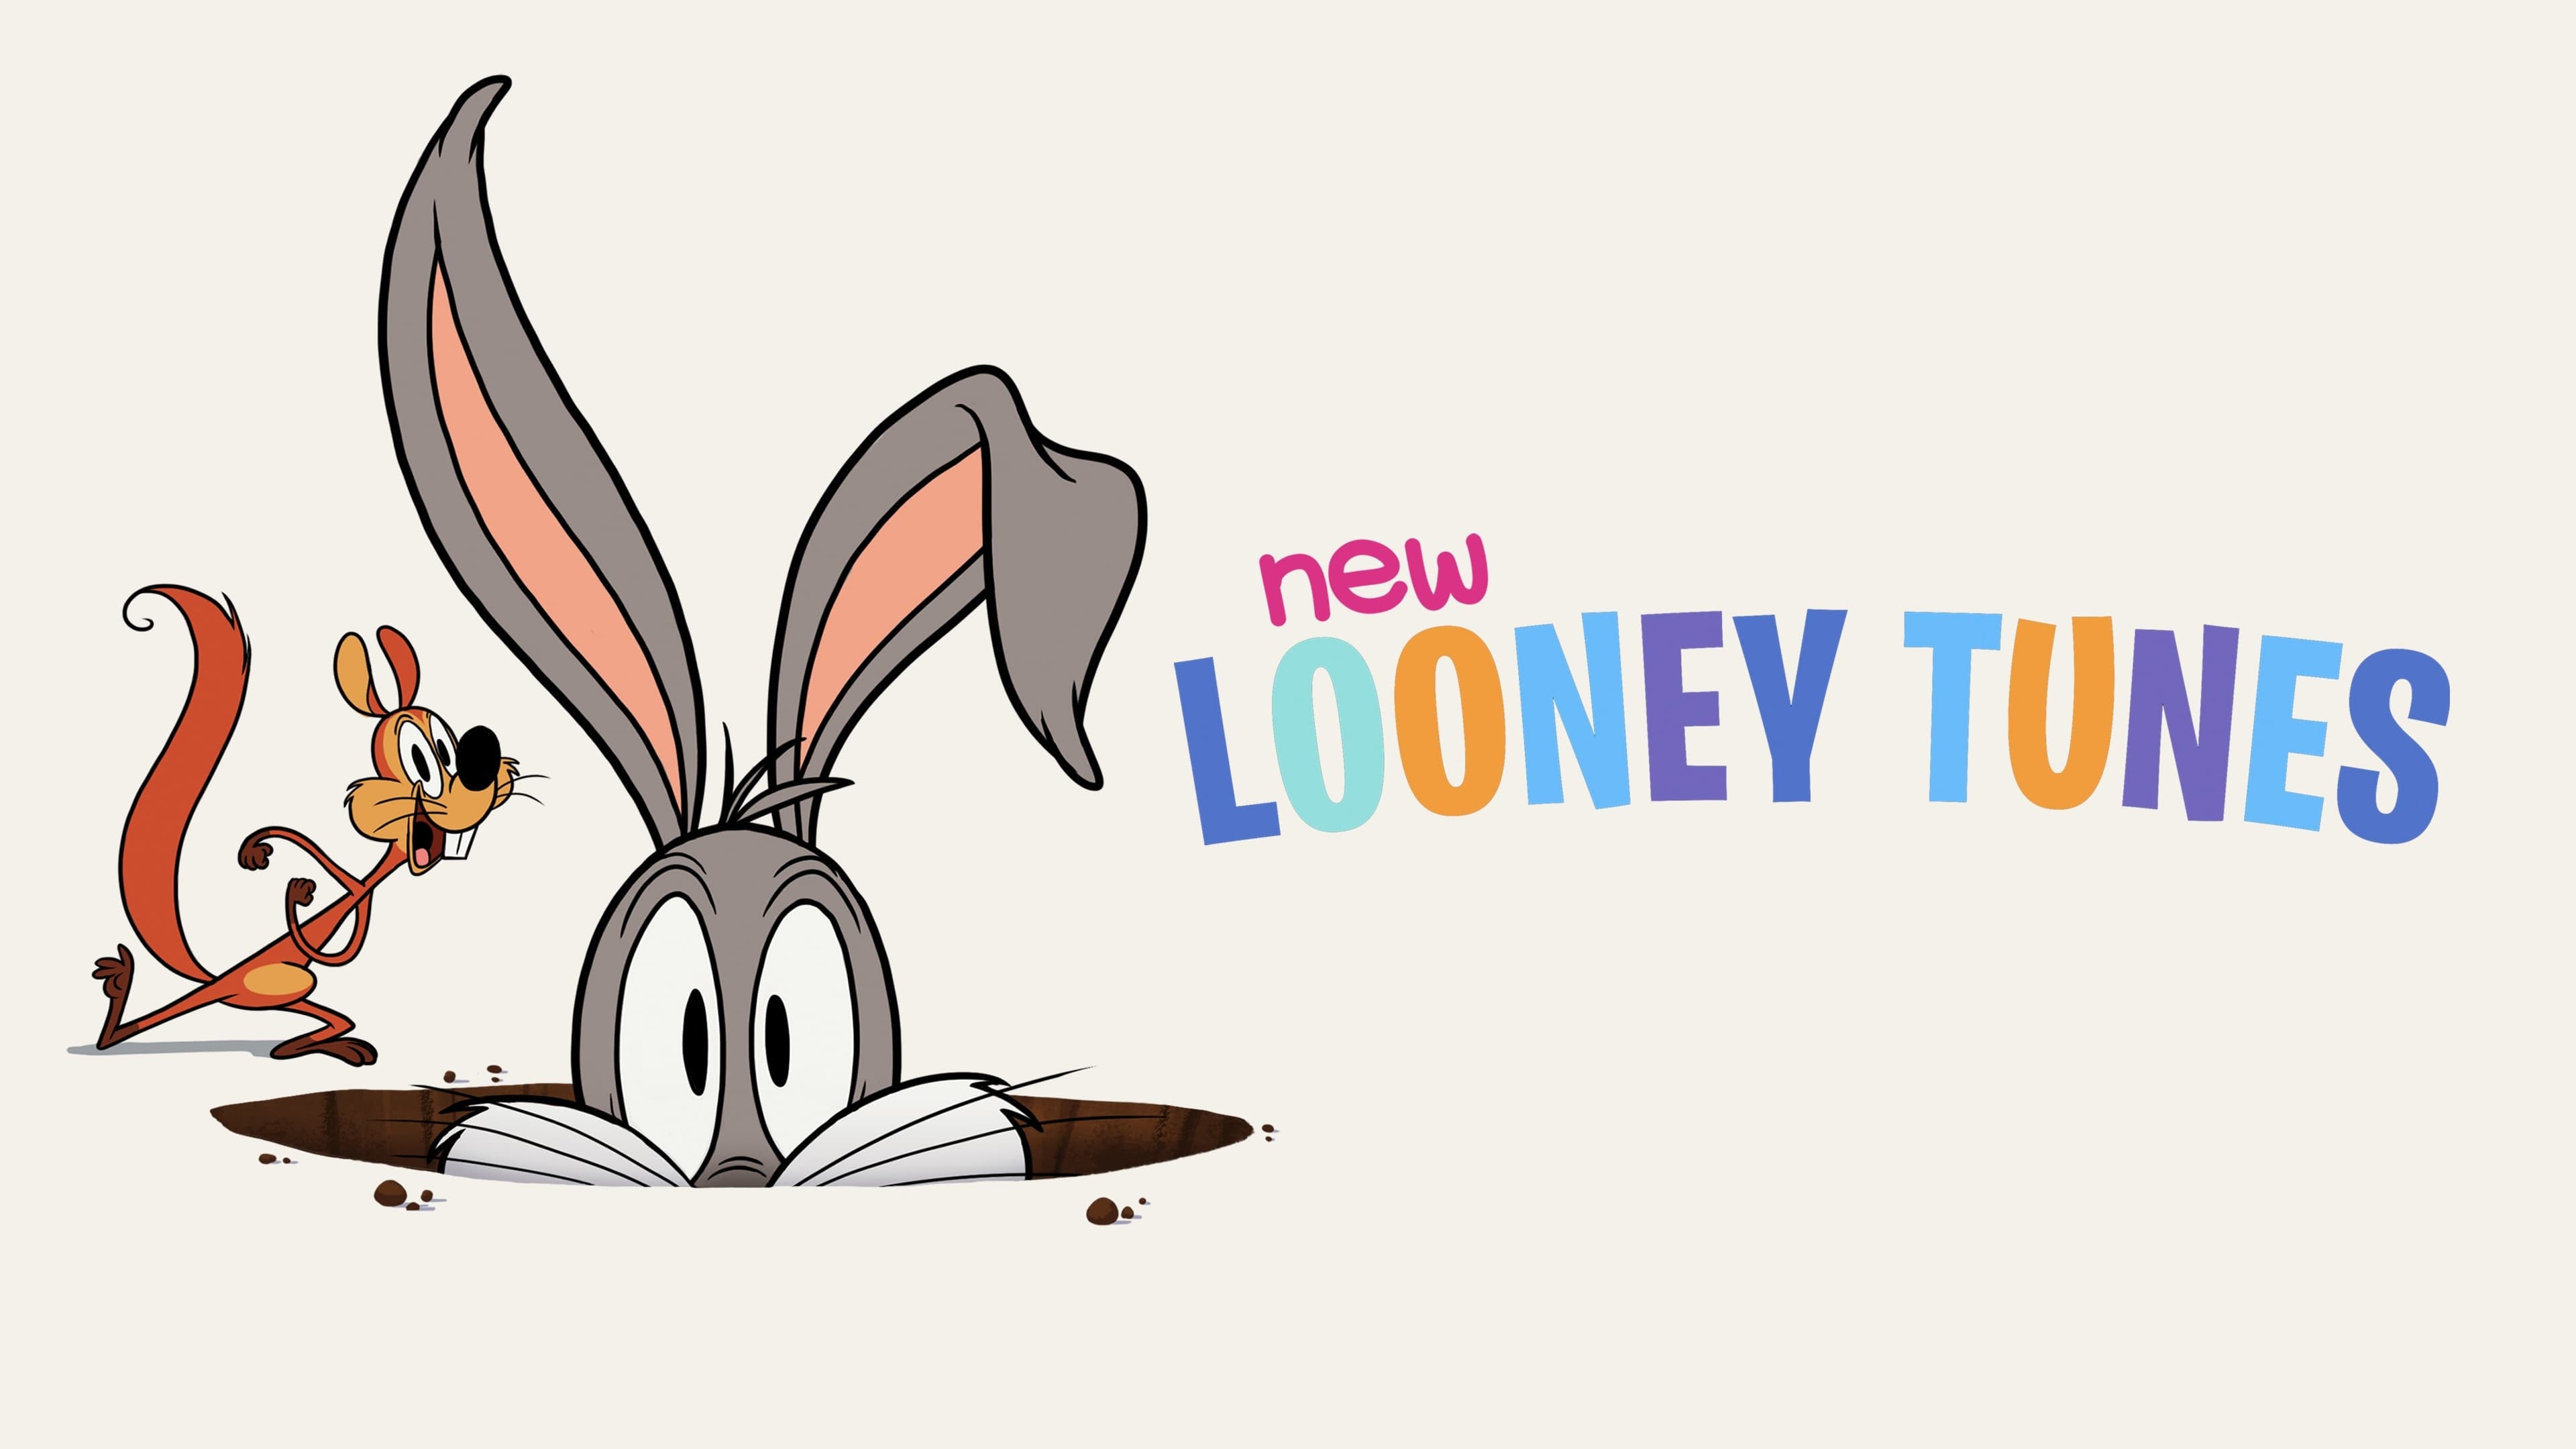 New Looney Tunes - Season 3 Episode 1